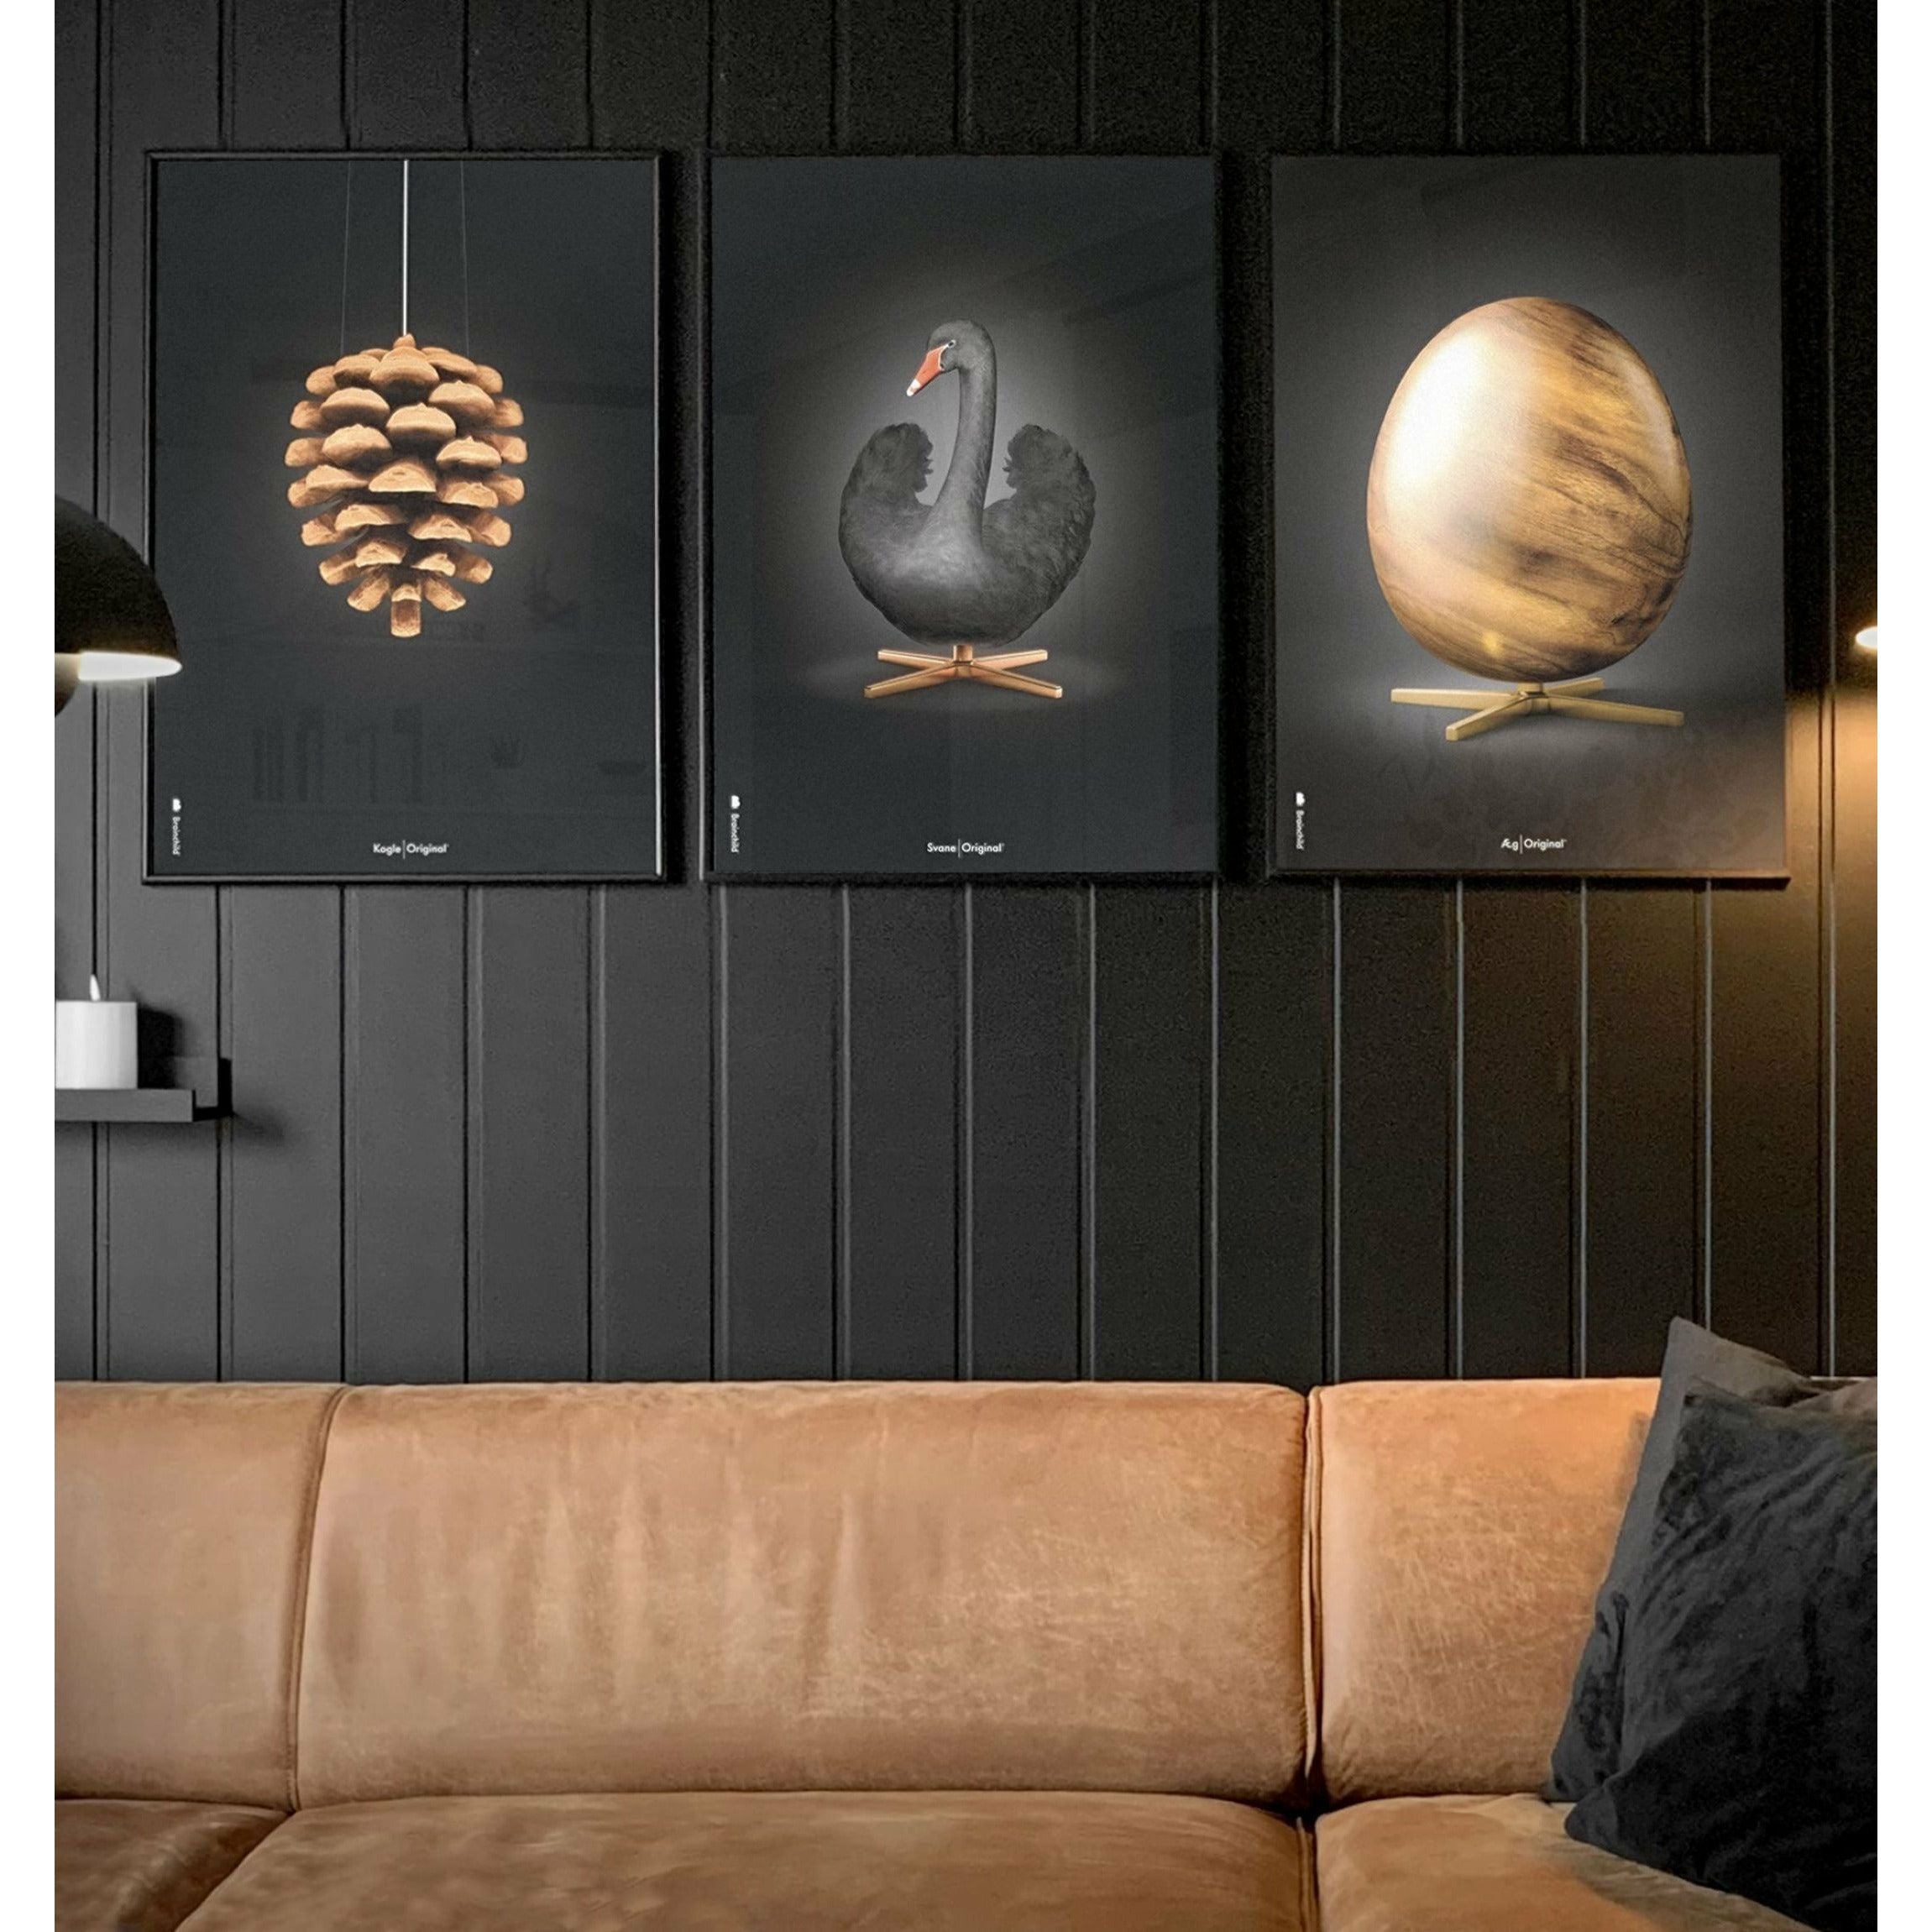 Brainchild Swan Classic Poster, messingramme 30x40 cm, svart/svart bakgrunn